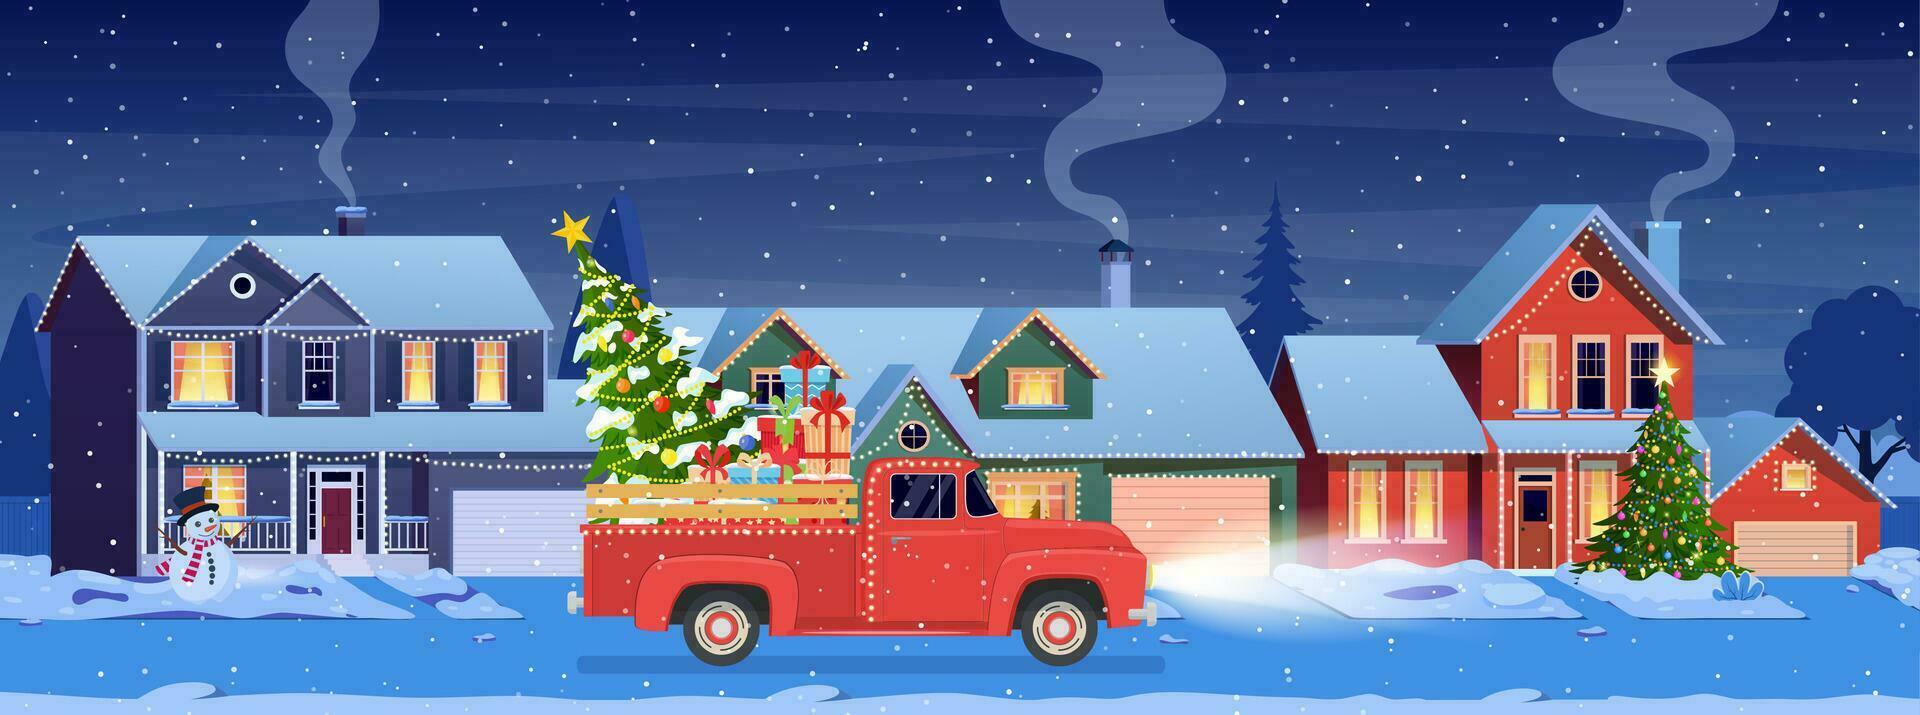 bostads- hus med jul dekoration på natt. jul landskap kort design av retro bil med presentlåda och jul träd. vektor illustration